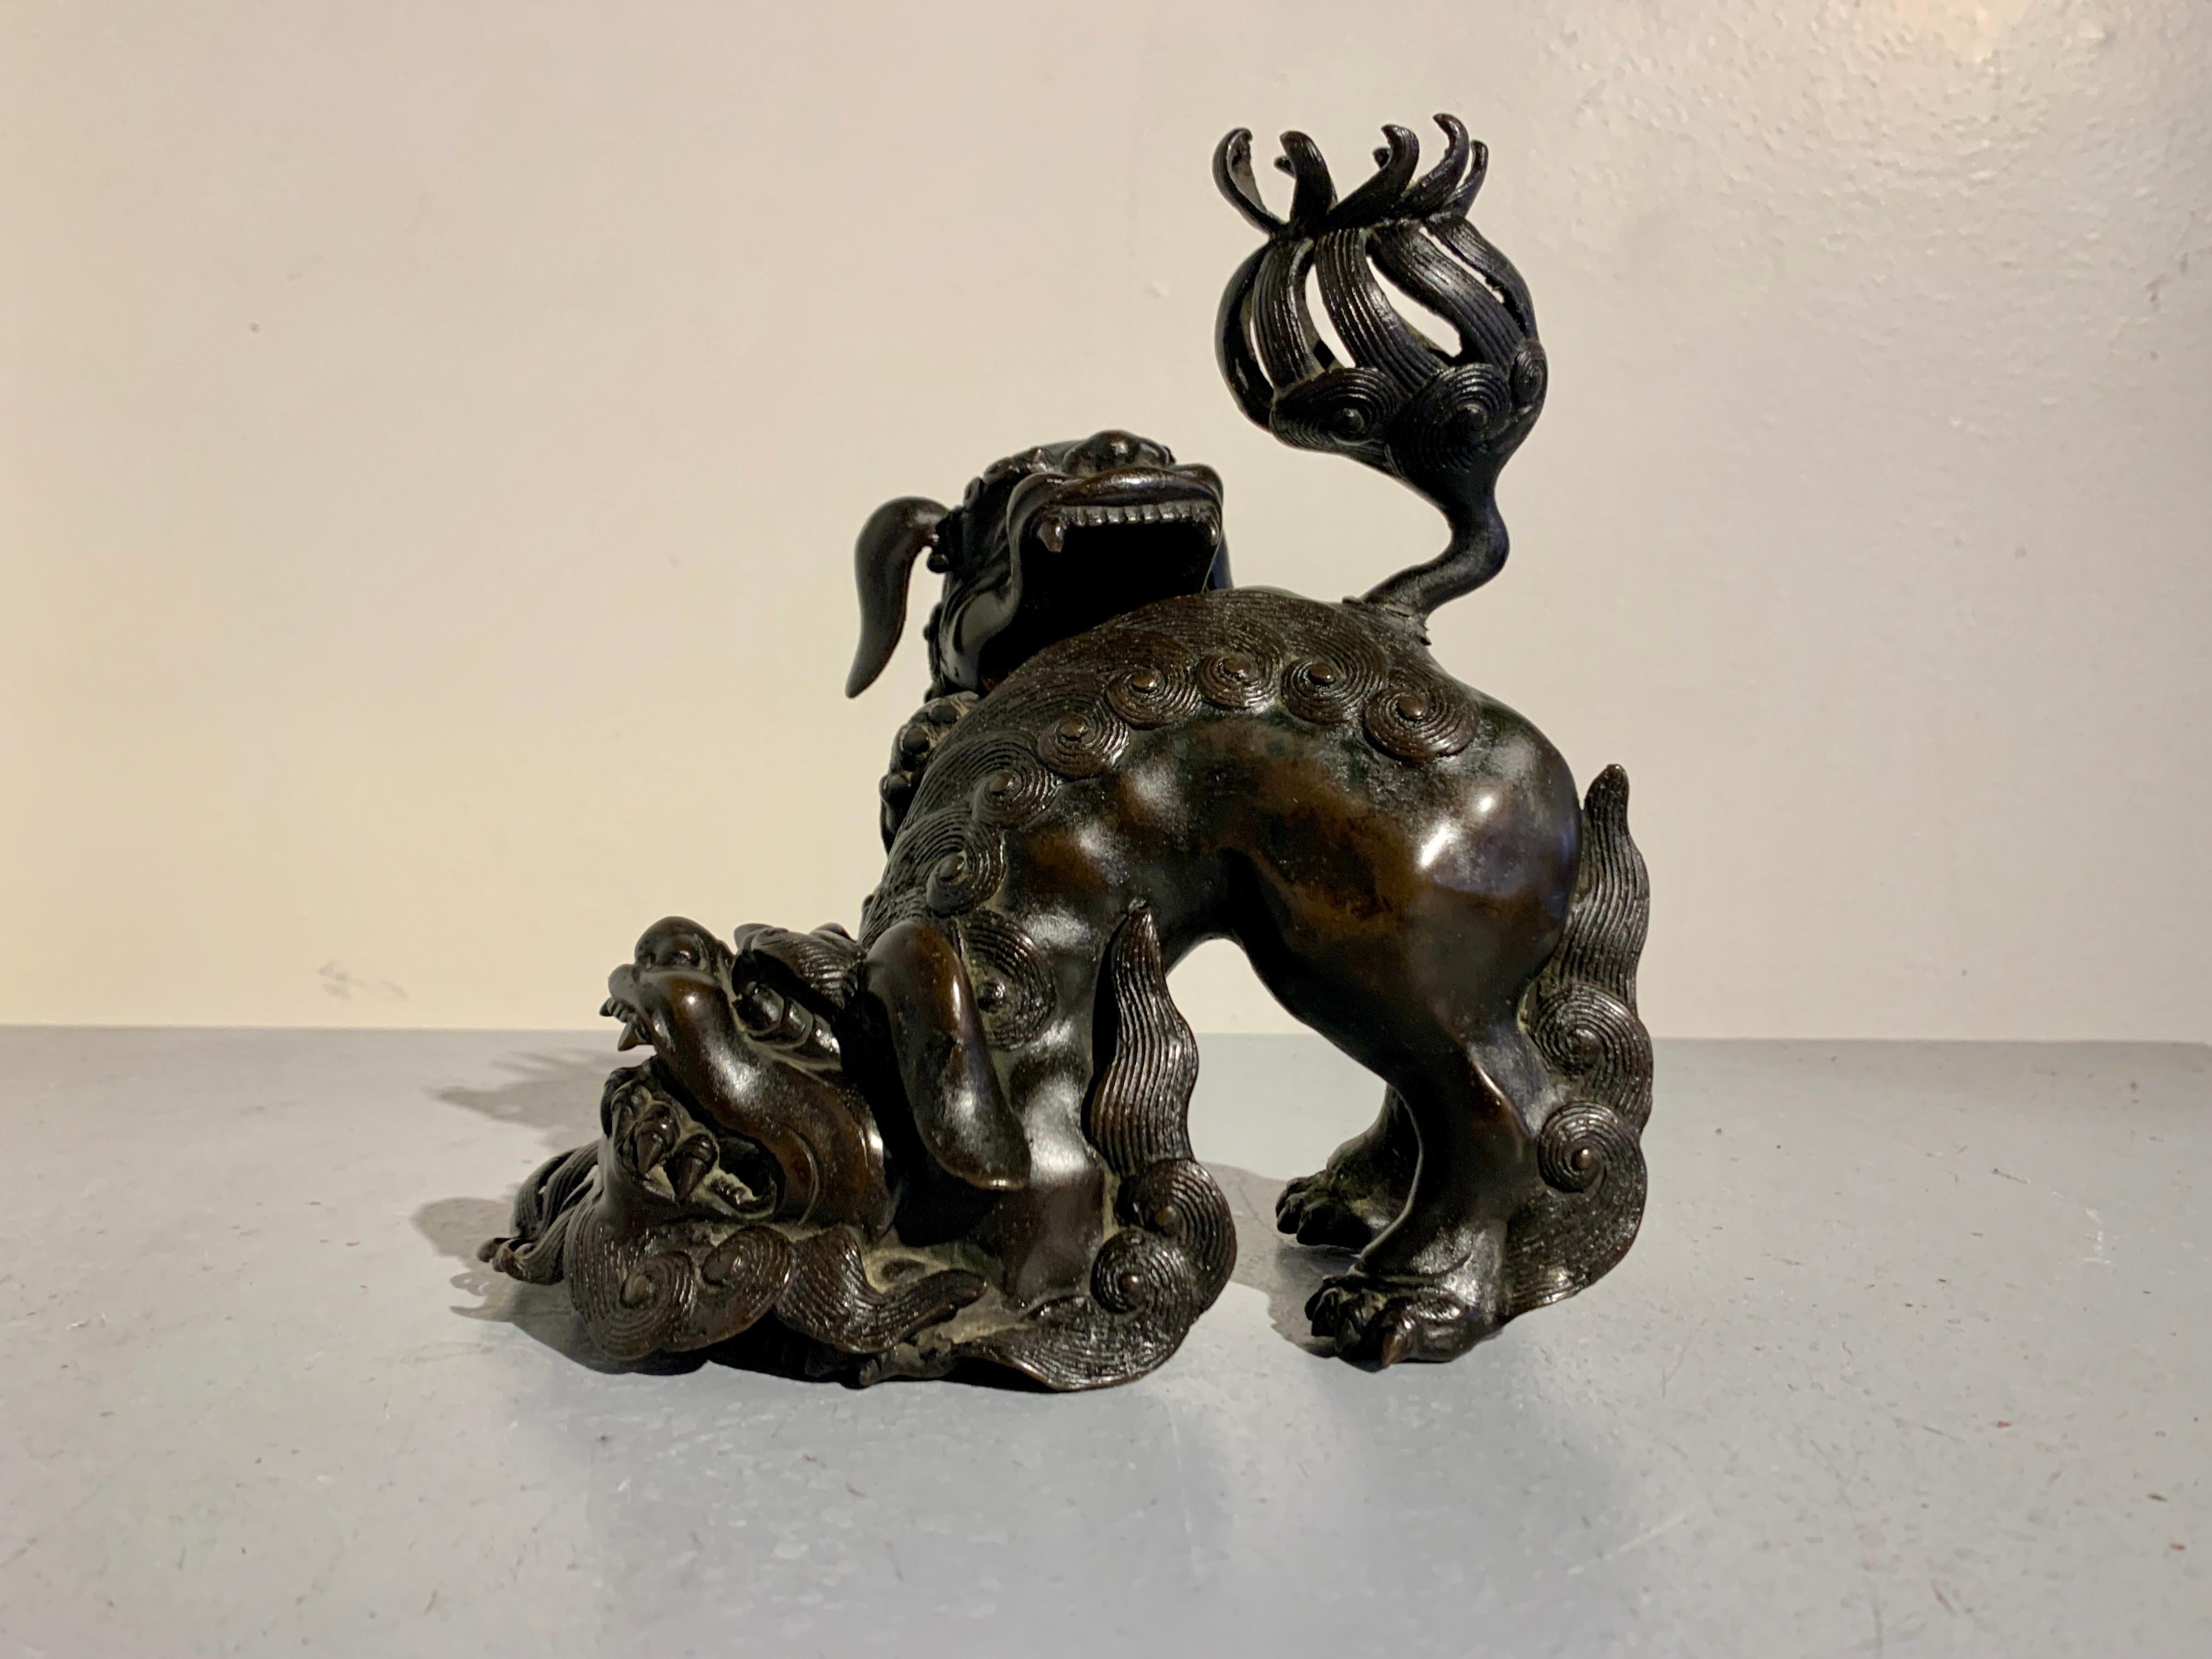 Ein fantastisches chinesisches Bronzegussgefäß in Form von zwei kämpfenden buddhistischen Löwen, späte Qing-Dynastie, spätes 19. Jahrhundert, China.

Das Räuchergefäß hat die Form eines Paares buddhistischer Löwen, die auch als Foo-Löwen bekannt